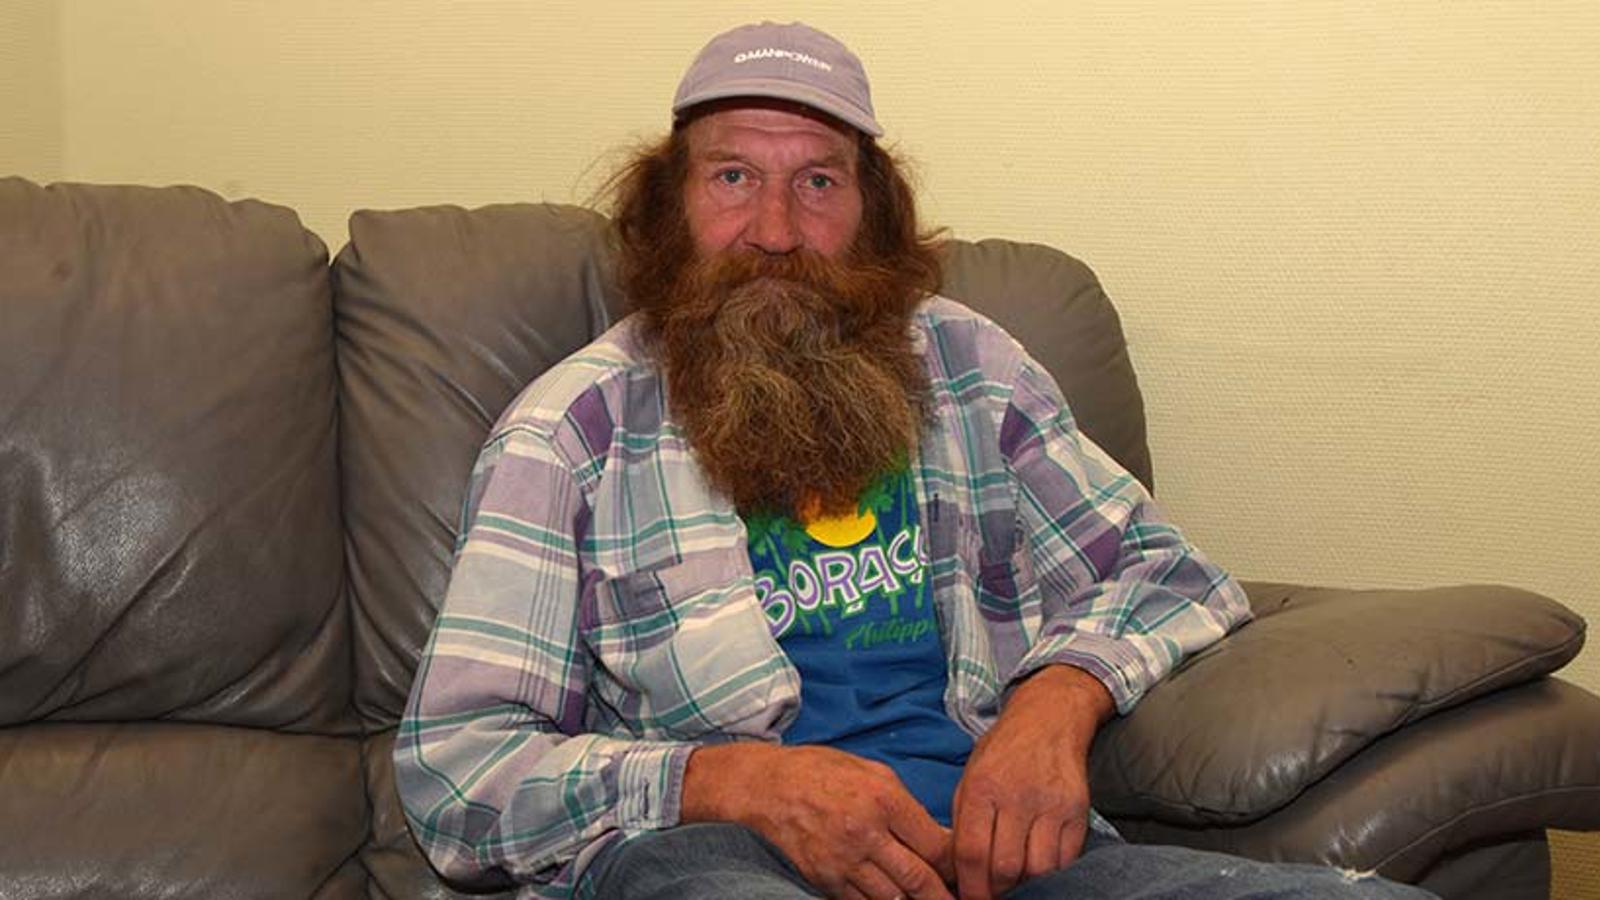 En äldre man med skägg, Kenneth, som sitter i en soffa och tittar in i kameran. Han är iklädd en blåa tröja med tryck och över tröjan har han en rutig skjorta.